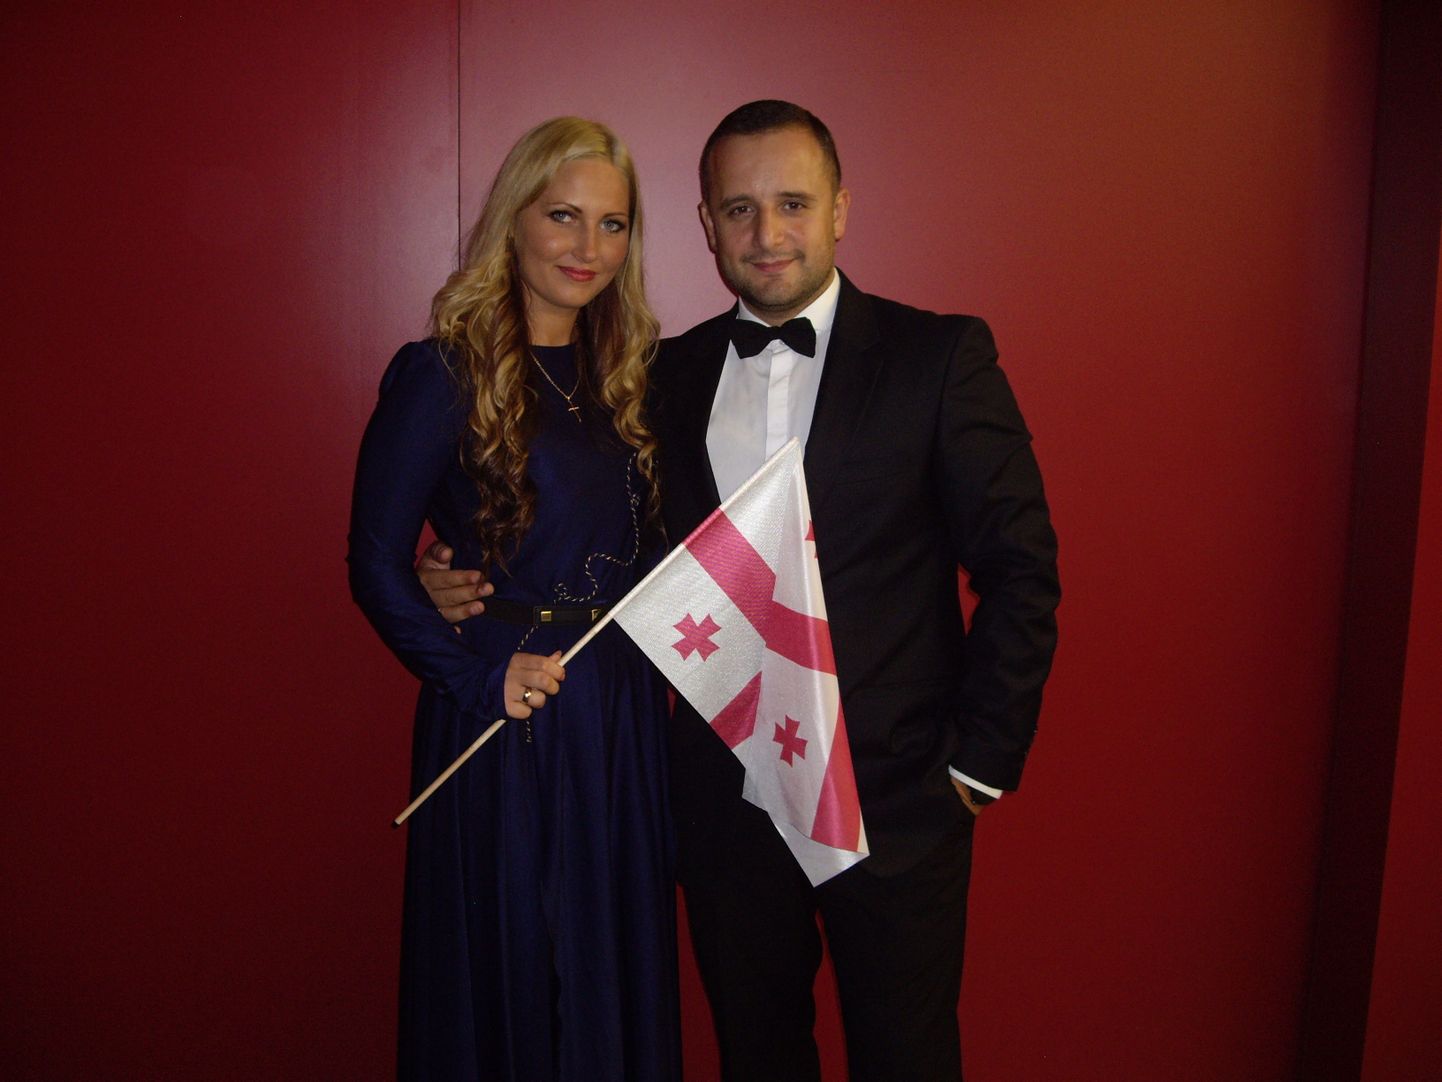 Rahvusvahelise noorte estraadilauljate konkursi 5. koha omanik, stuudio Joy laulusolist Anete Irkle koos grand prix’ võitja, Gruusia laulusolisti Artšiliga.